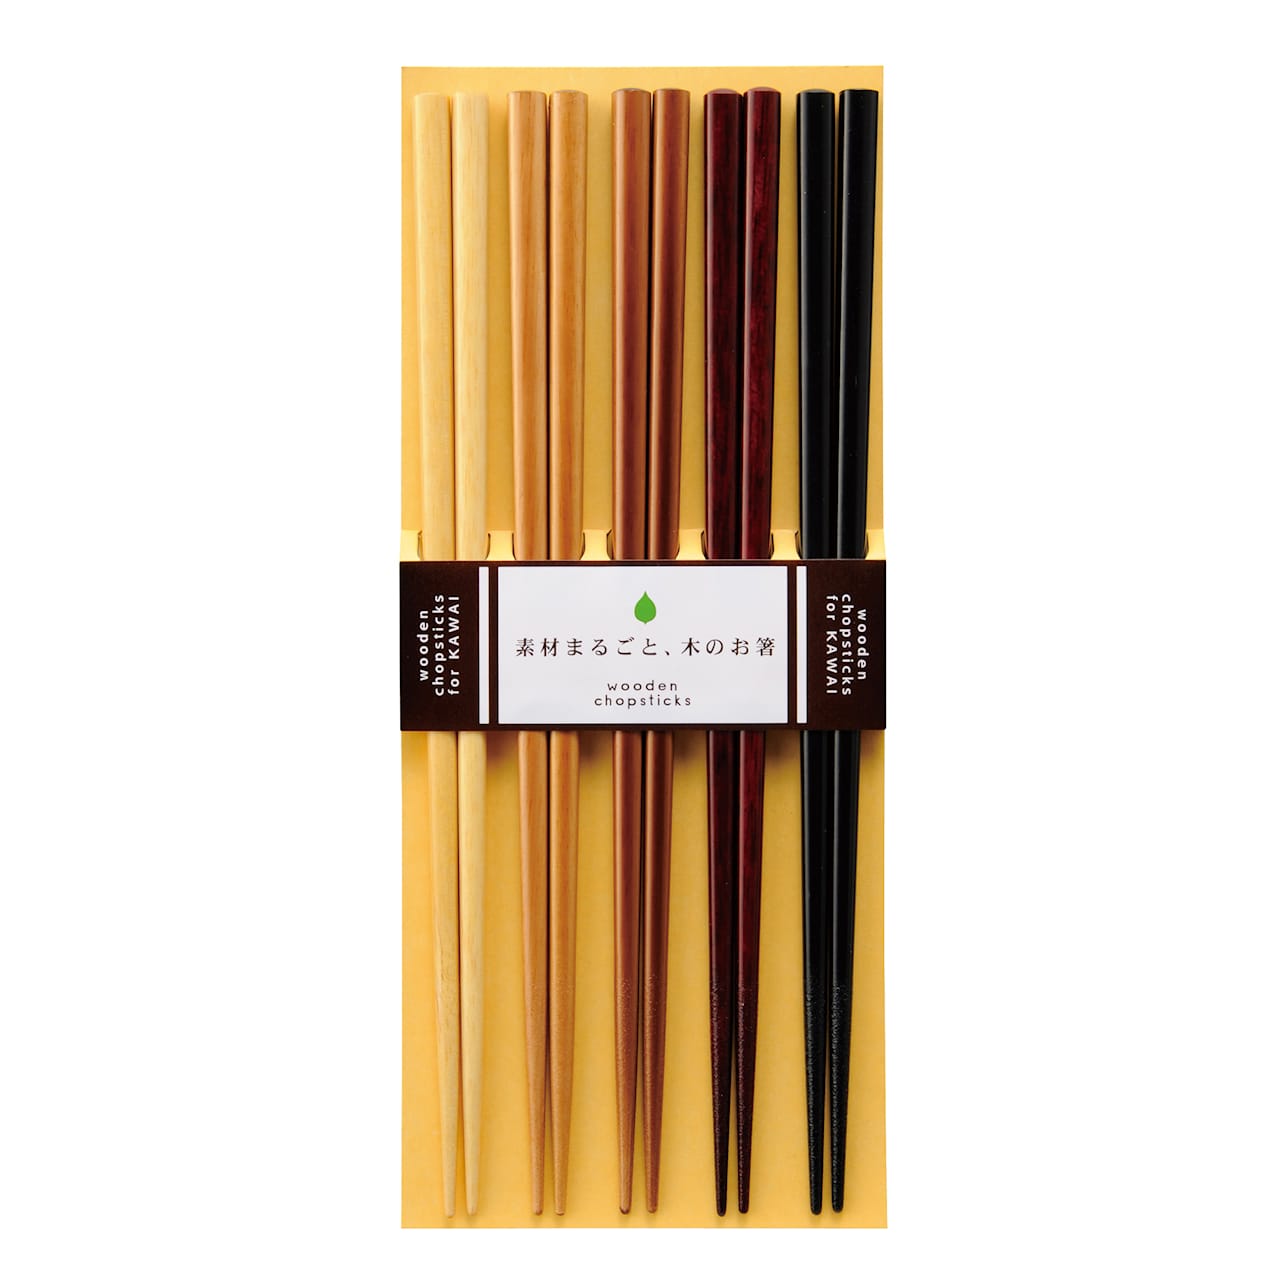 Kawai Natural Wood Chopsticks - Set of 5